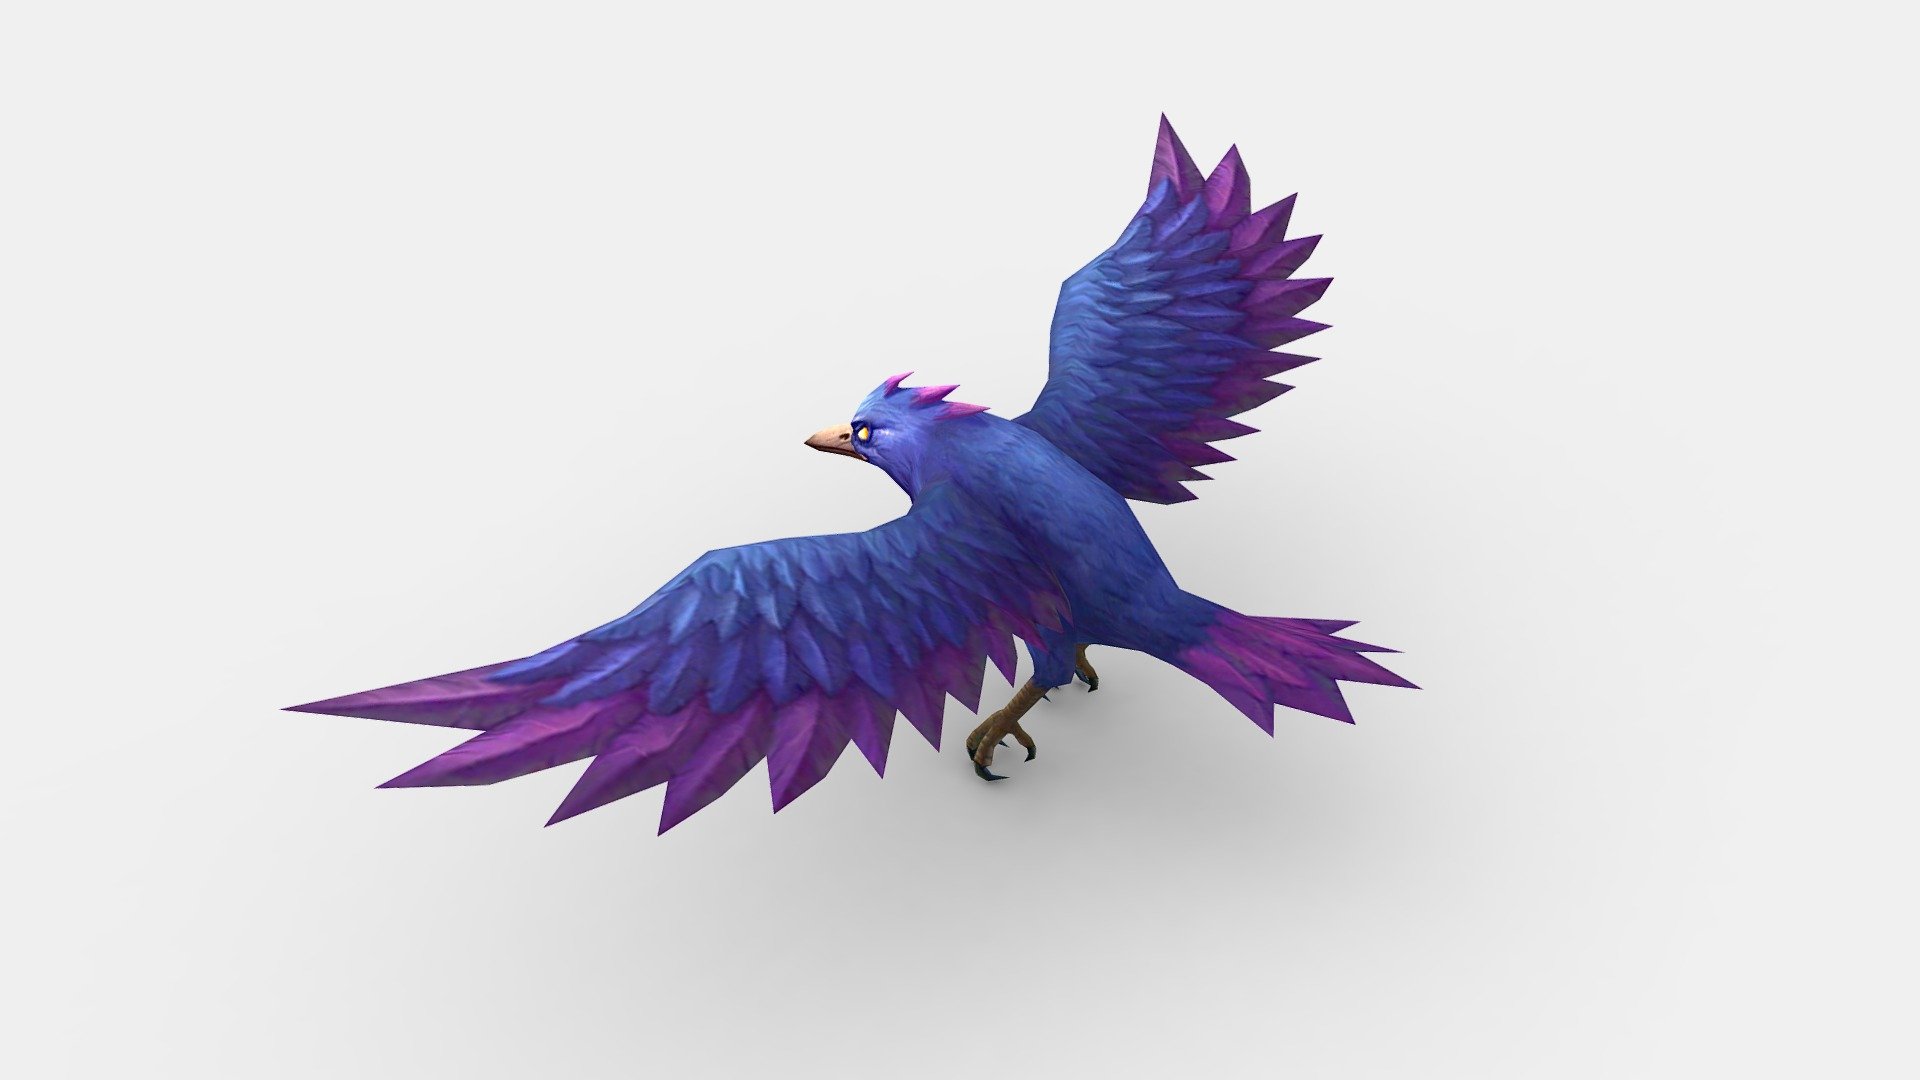 Cartoon Crow - Raven - Blue Bird Monster - Cartoon Crow - Raven - Blue Bird Monster - Buy Royalty Free 3D model by ler_cartoon (@lerrrrr) 3d model